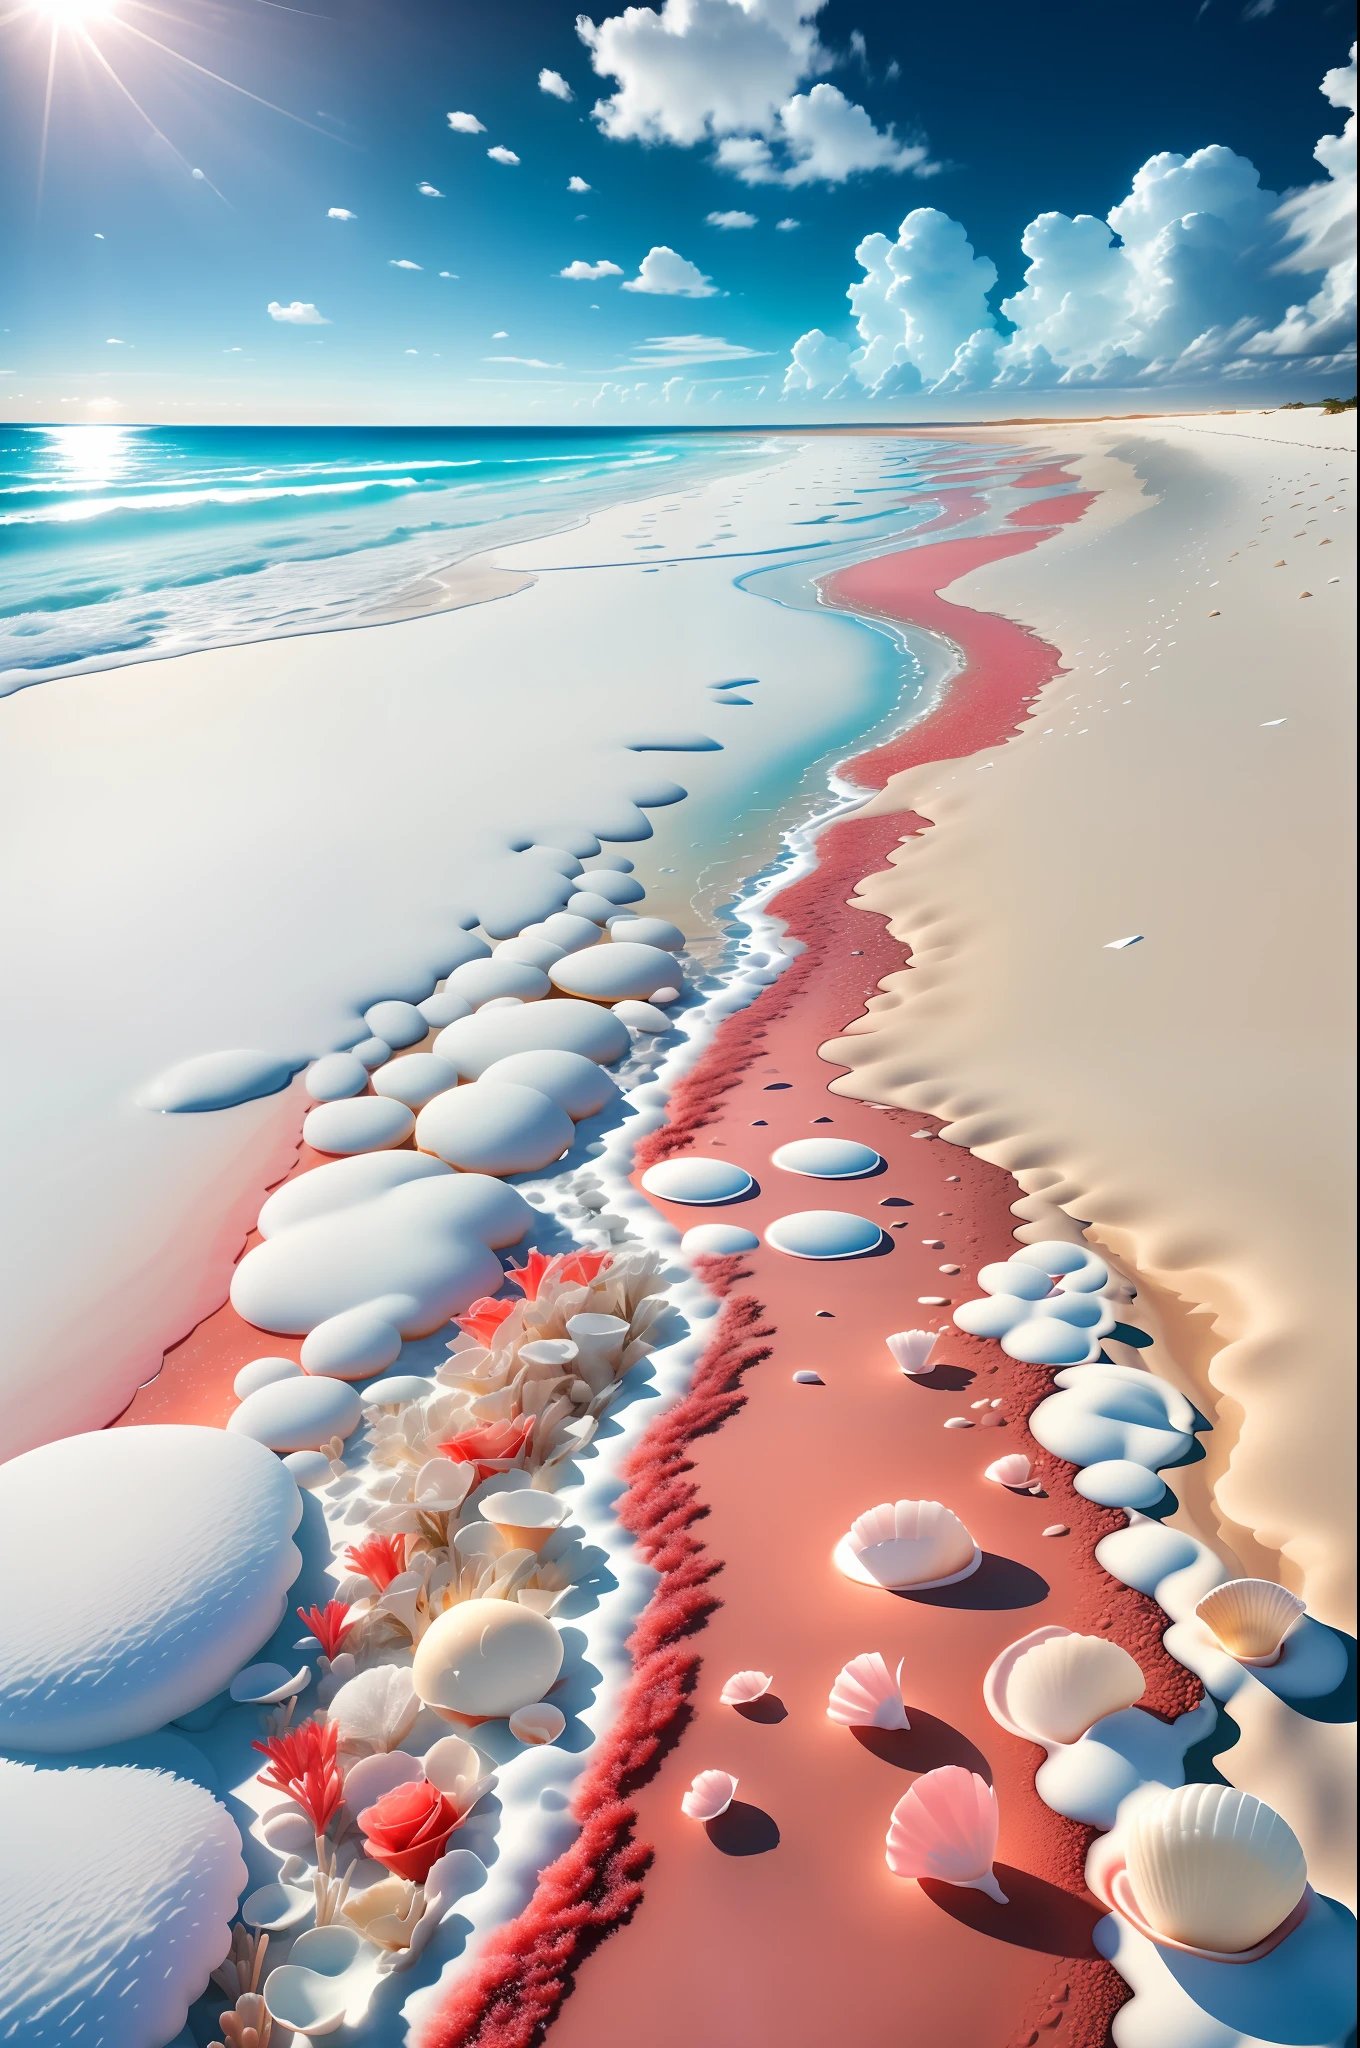 escena delicada,profundidad de campo, 8k, el cielo de marfil,nubes blancas,y la luz del sol brilla en la playa blanca como la nieve. el mar de coral,y muchas conchas pequeñas y coloridas en la playa,rosas rojas, enfoque de rosas,